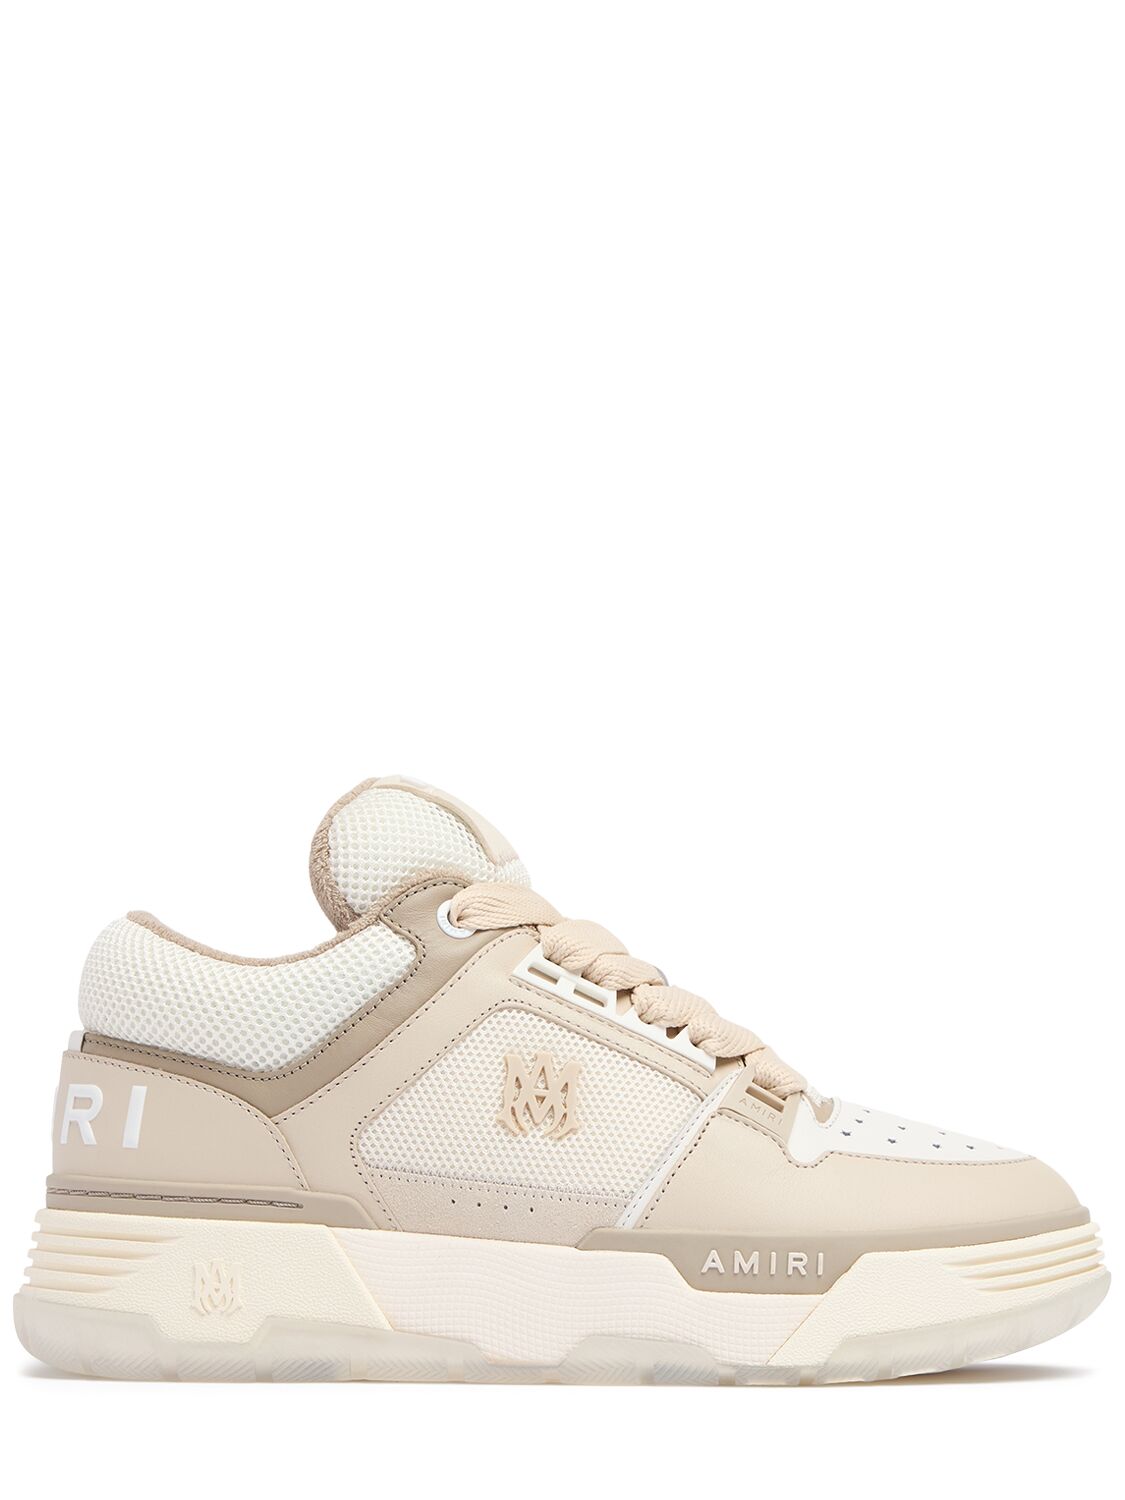 Amiri Ma-1 Sneakers In Beige/white